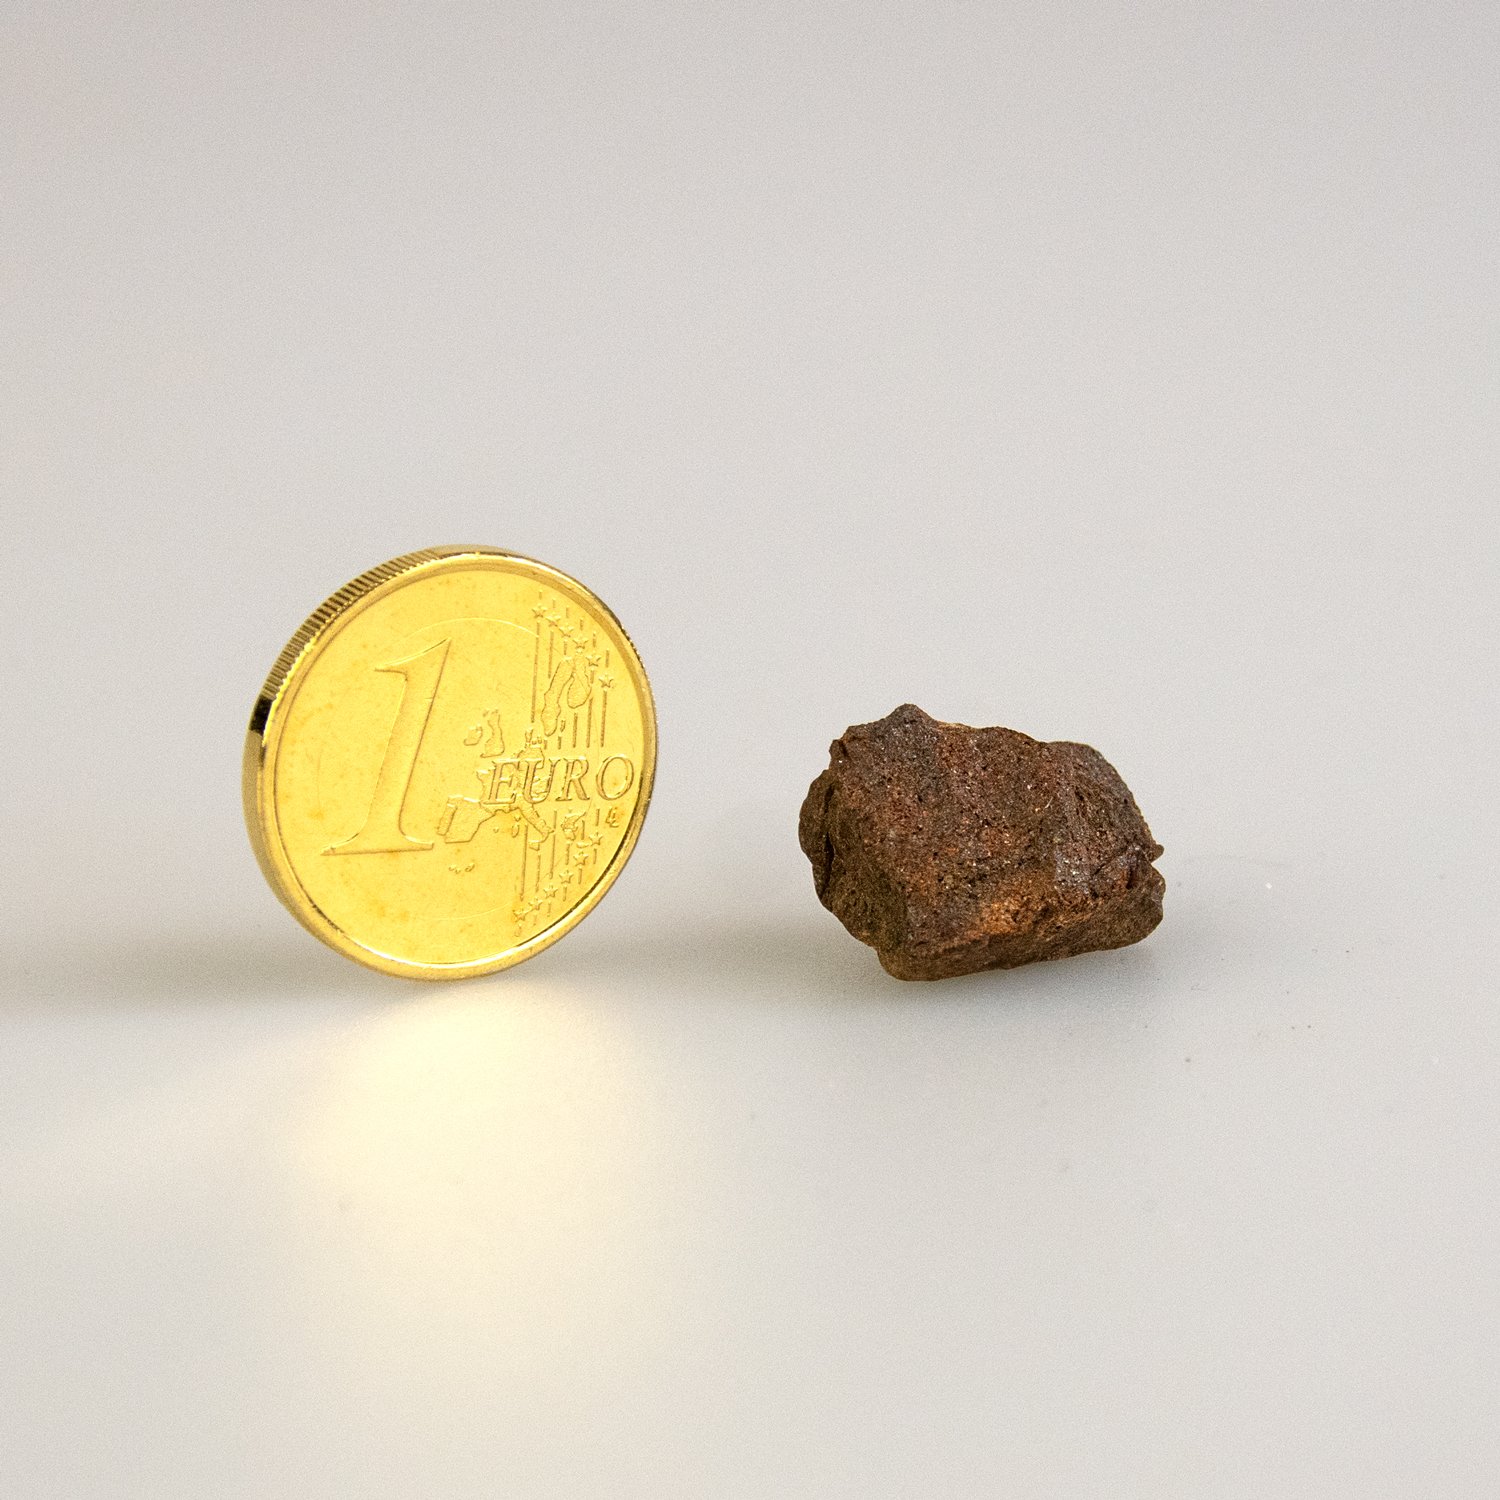 Sternschnuppe kaufen - Echte Meteoriten